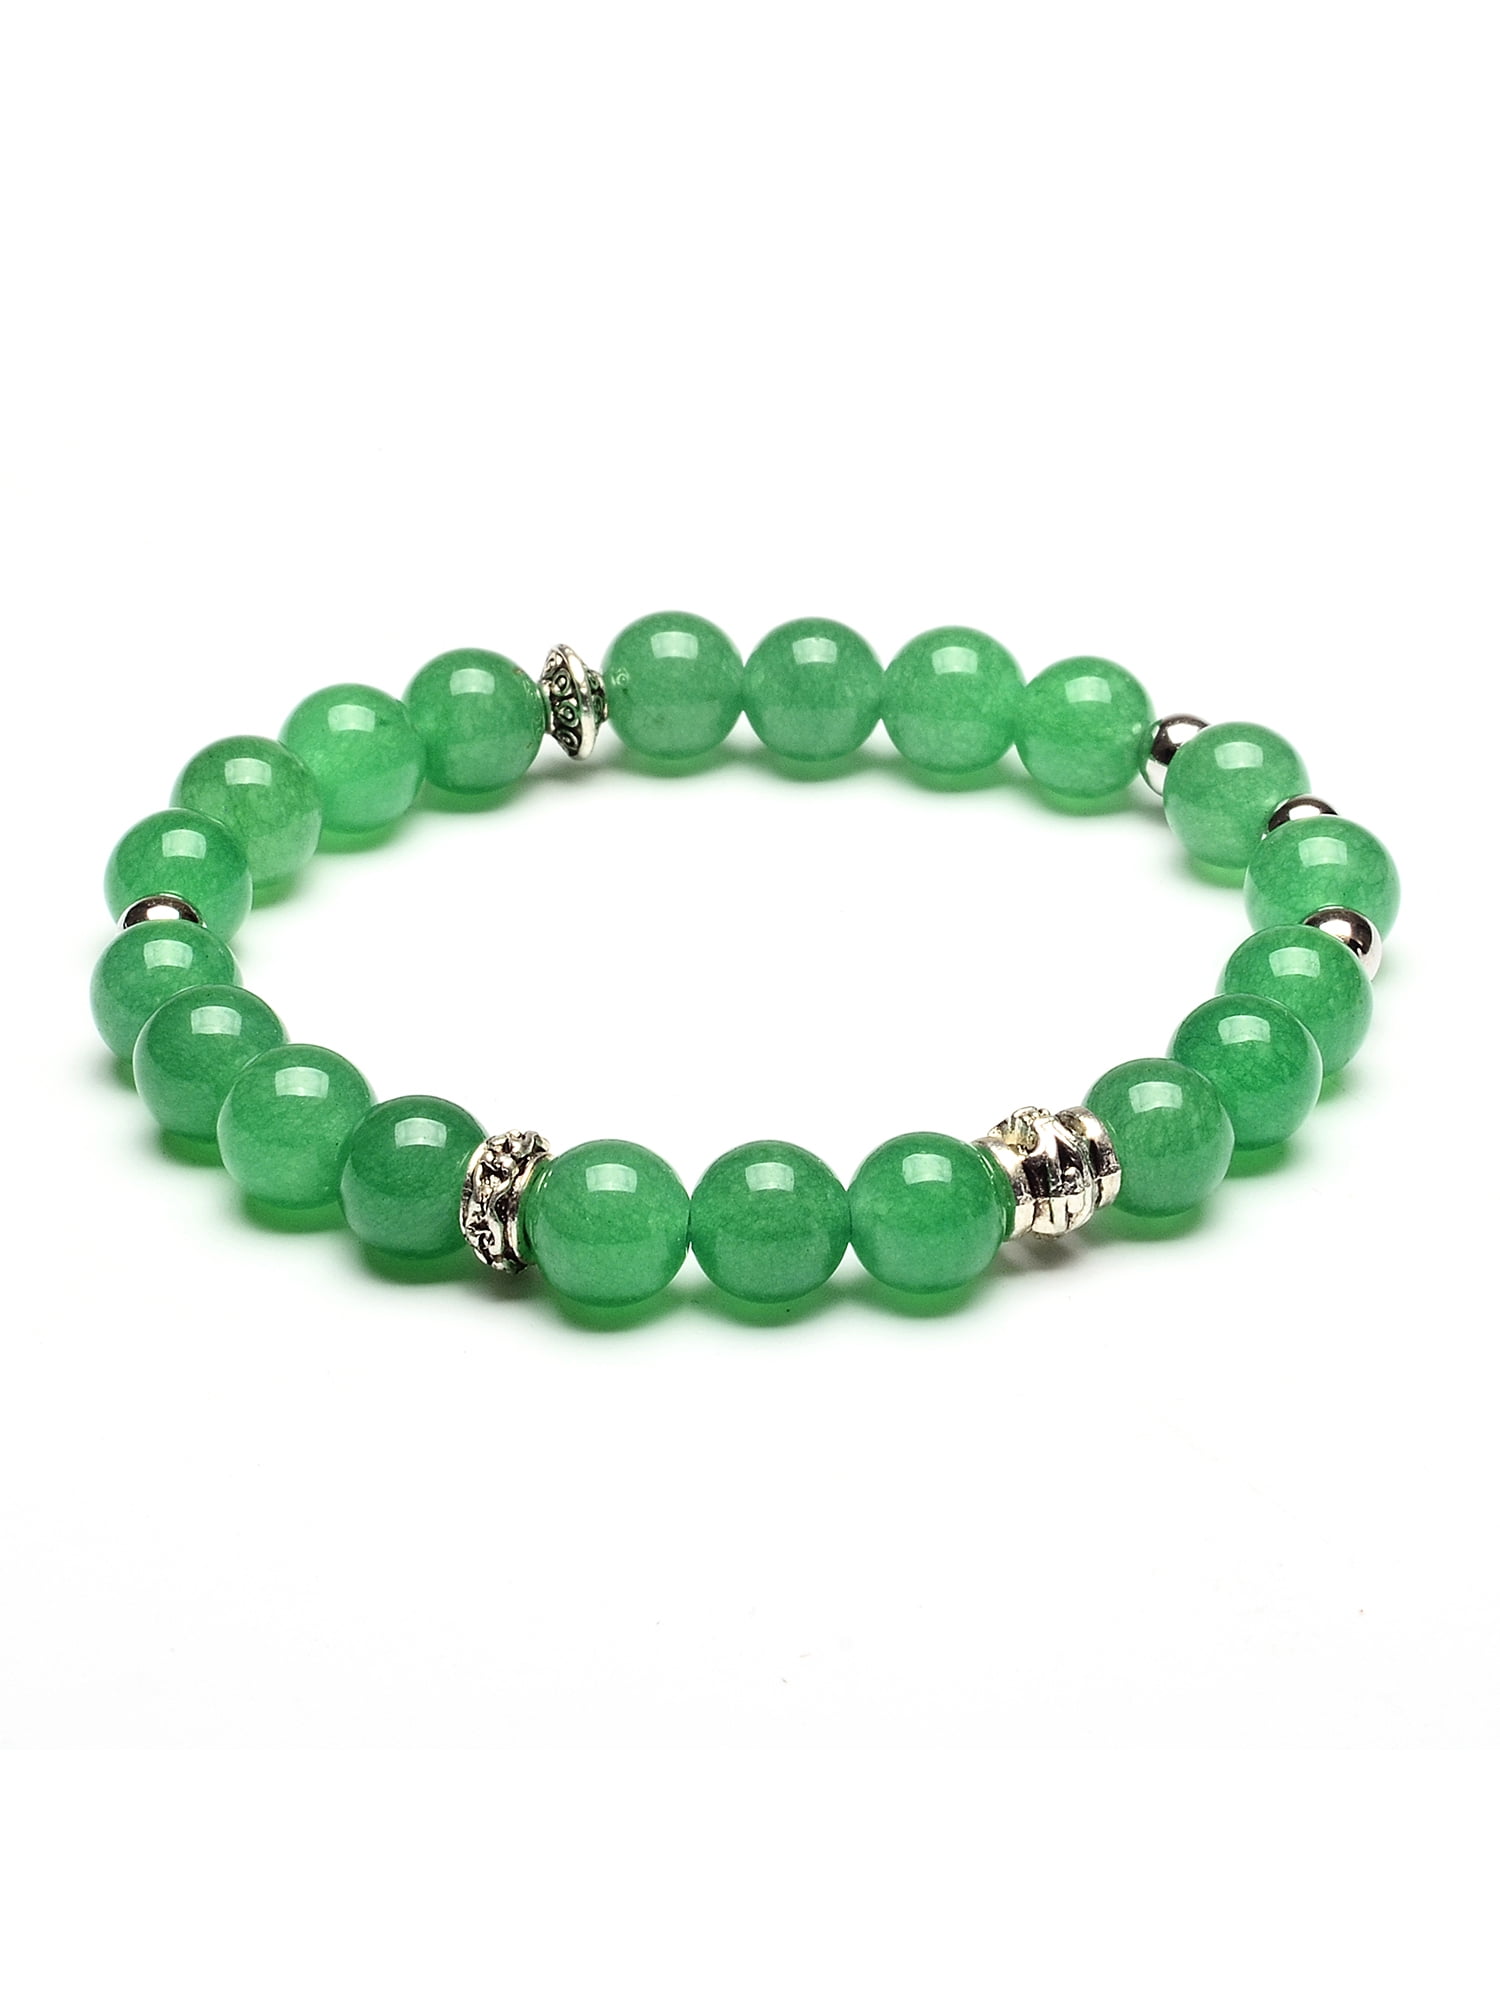 Lovely Adjustable 16 8mm Light Green Jade Beaded Amulet Bracelet 